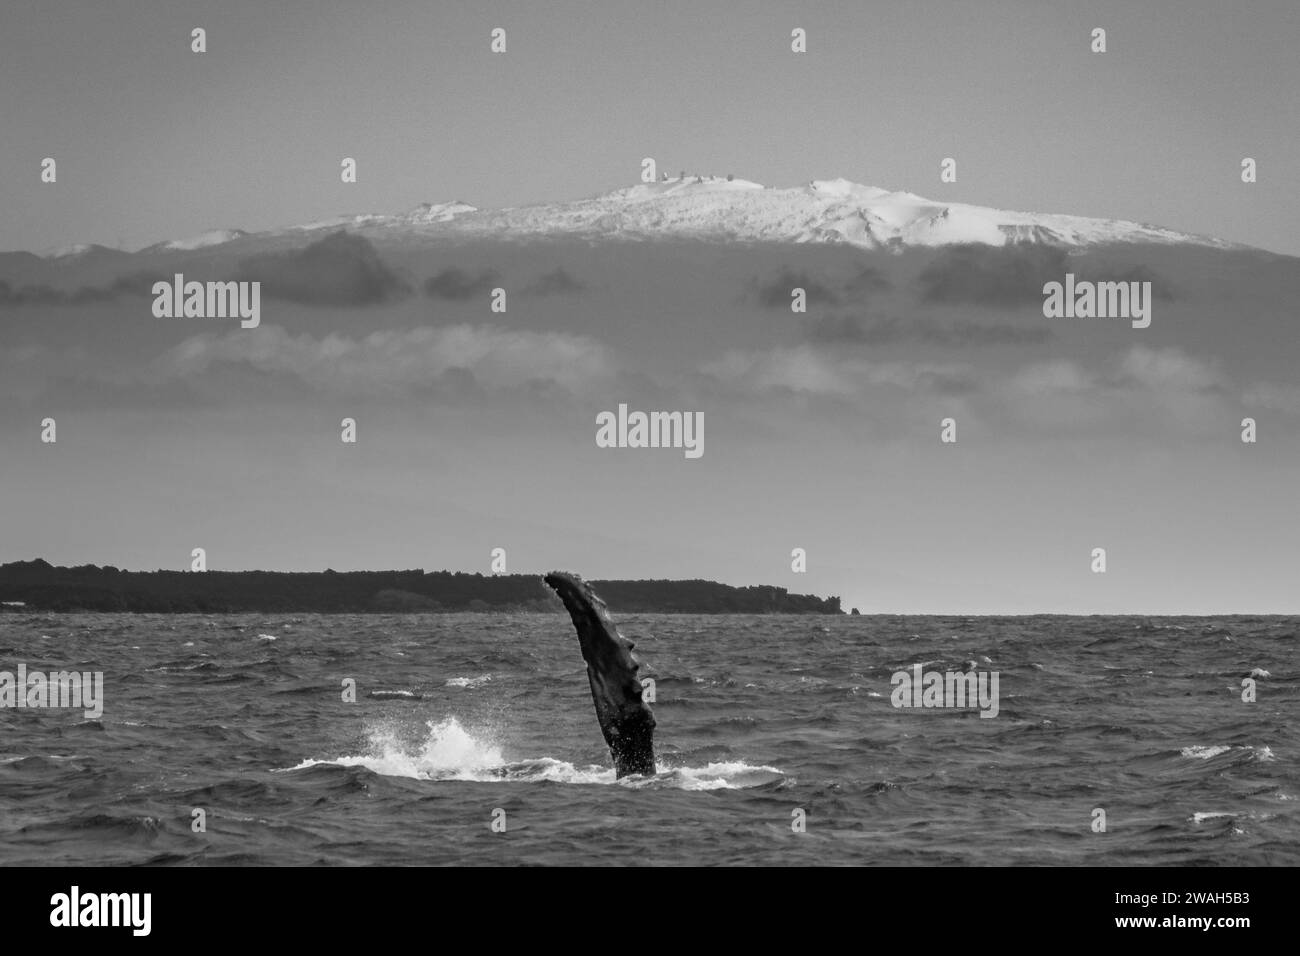 Queue de baleine majestueuse avec une montagne enneigée en toile de fond Banque D'Images